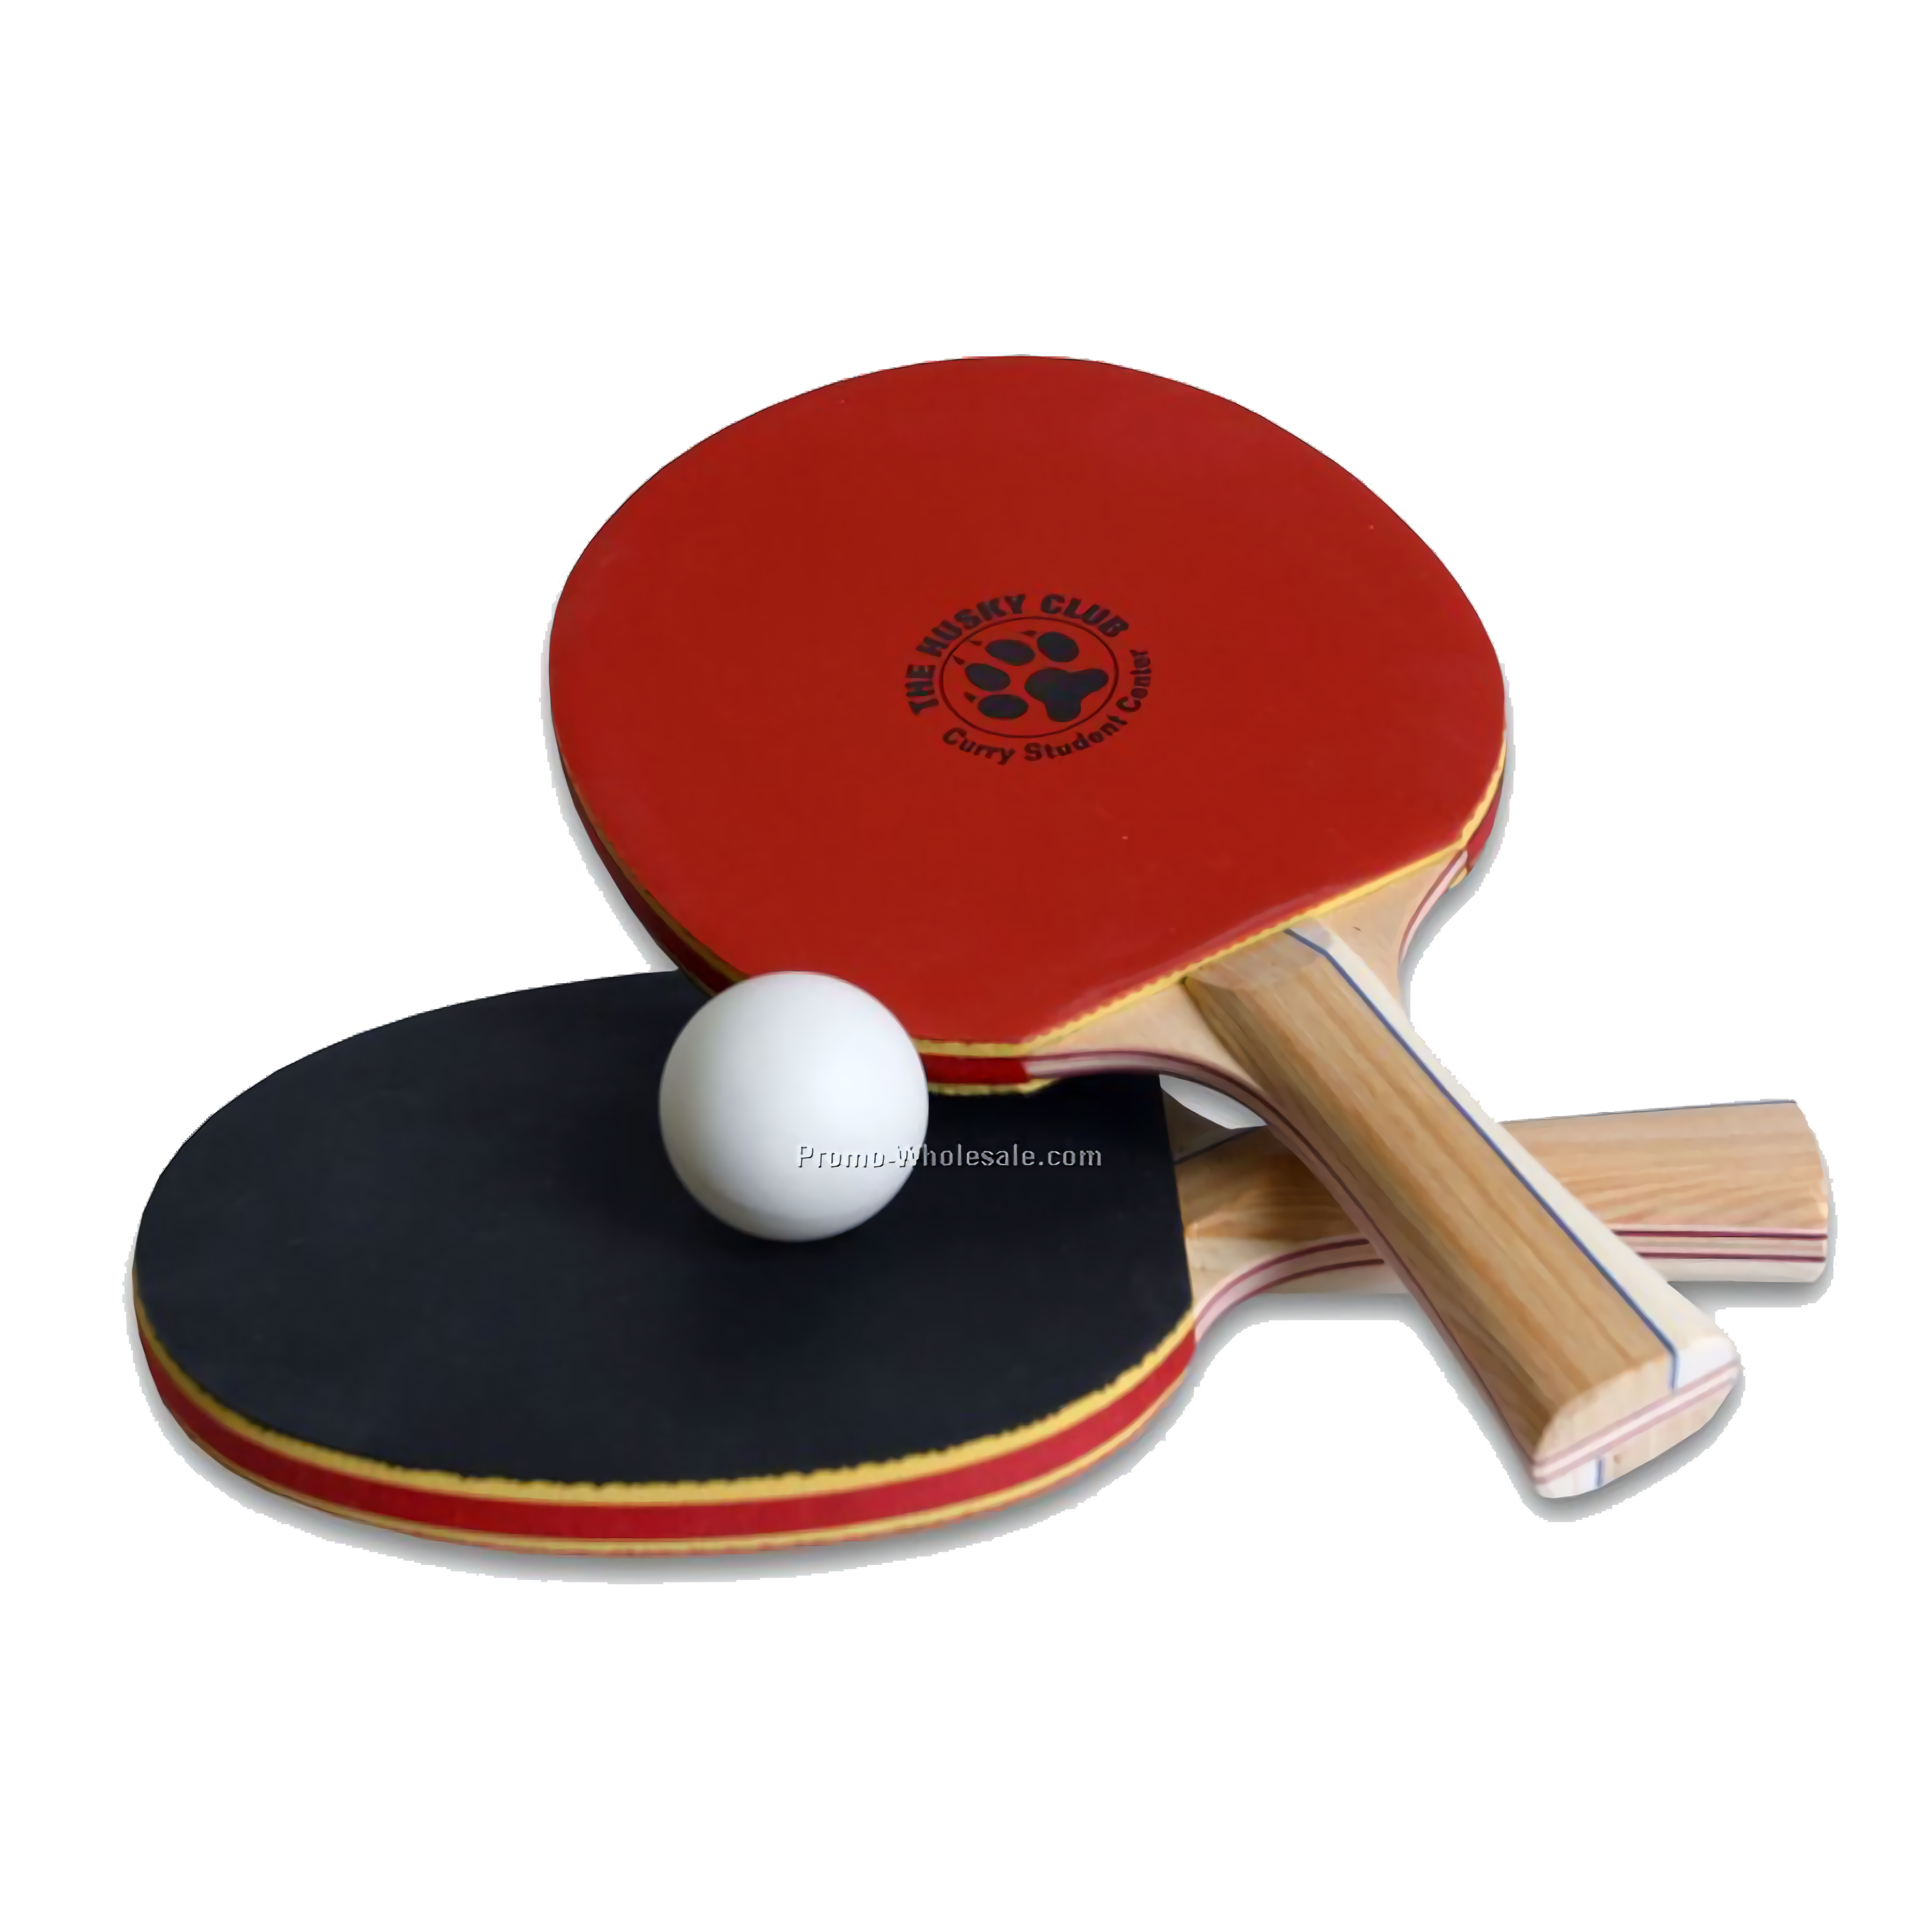 Jeux de Ping Pong